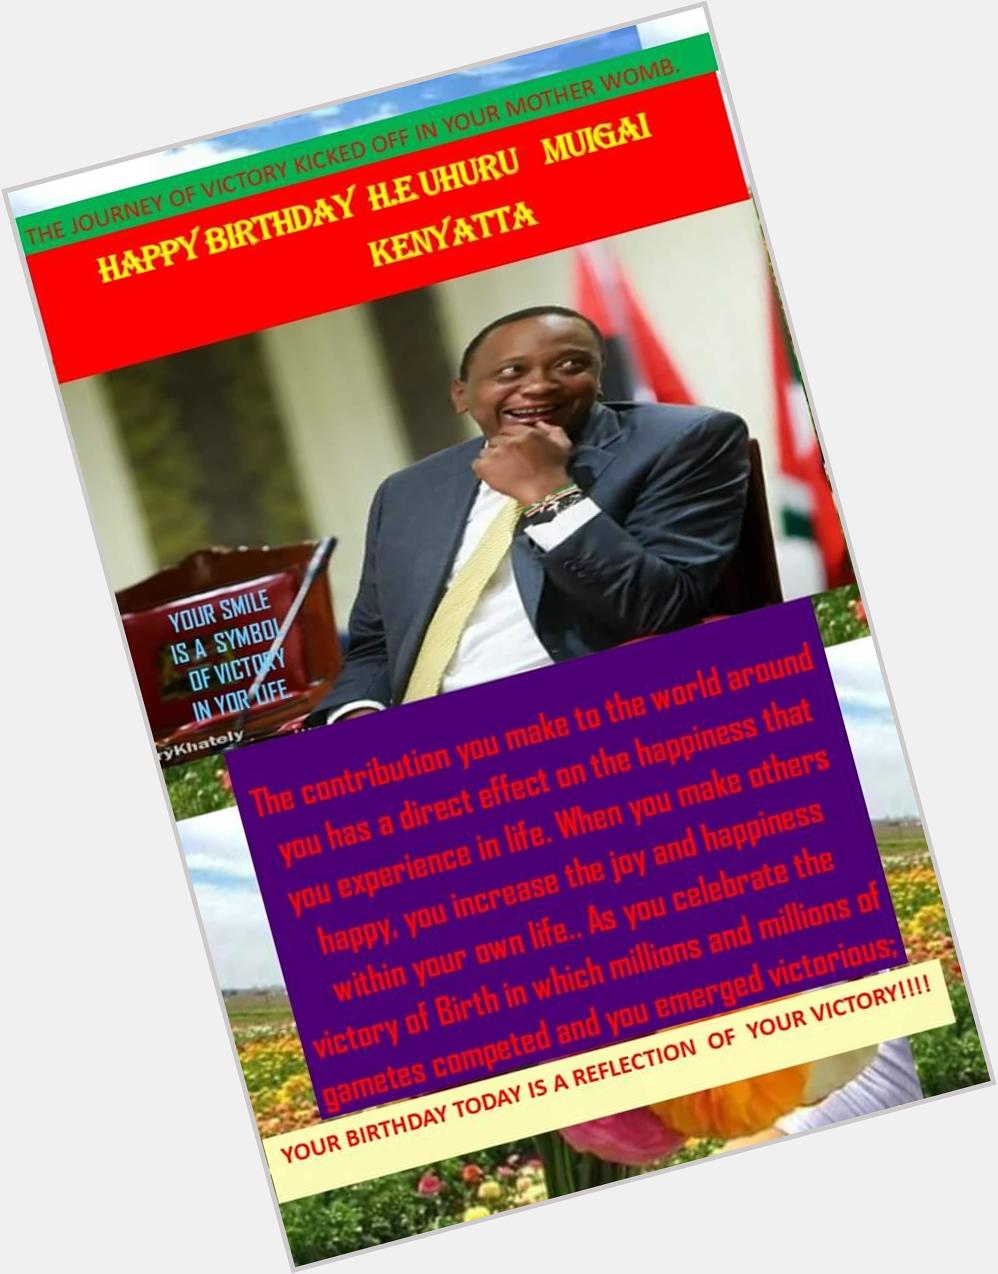 Happy Birthday H.E. Uhuru Kenyatta 